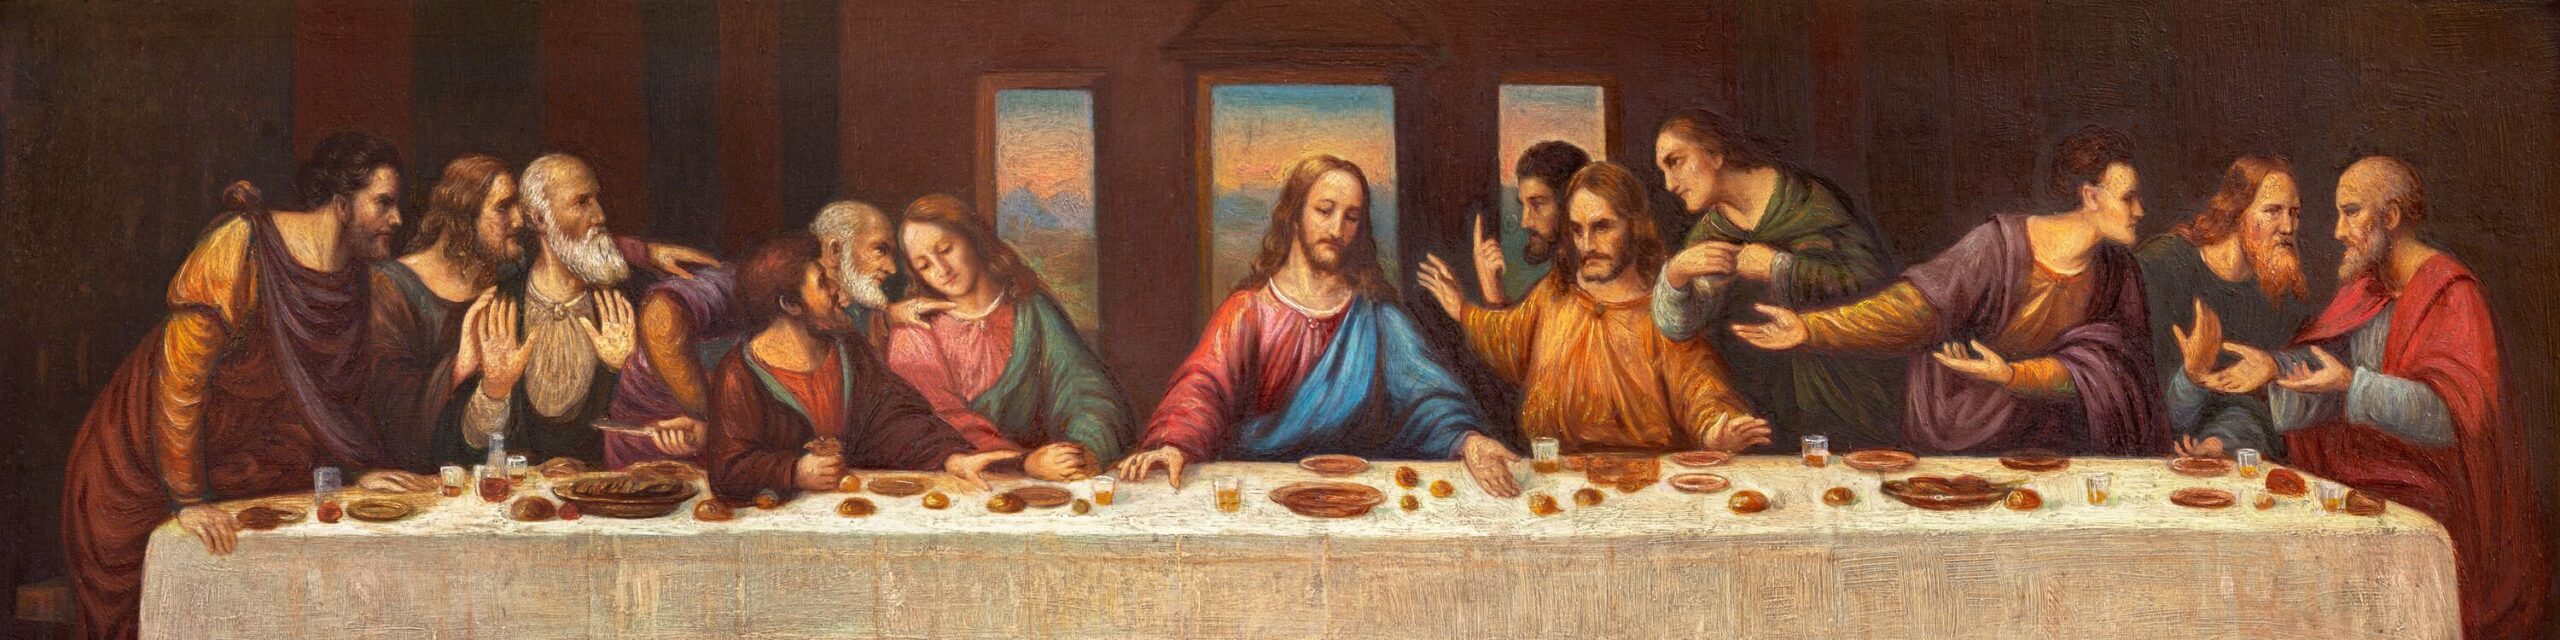 An Gründonnerstag beginn Jesus mit seinen Jüngern das letzte Abendmahl